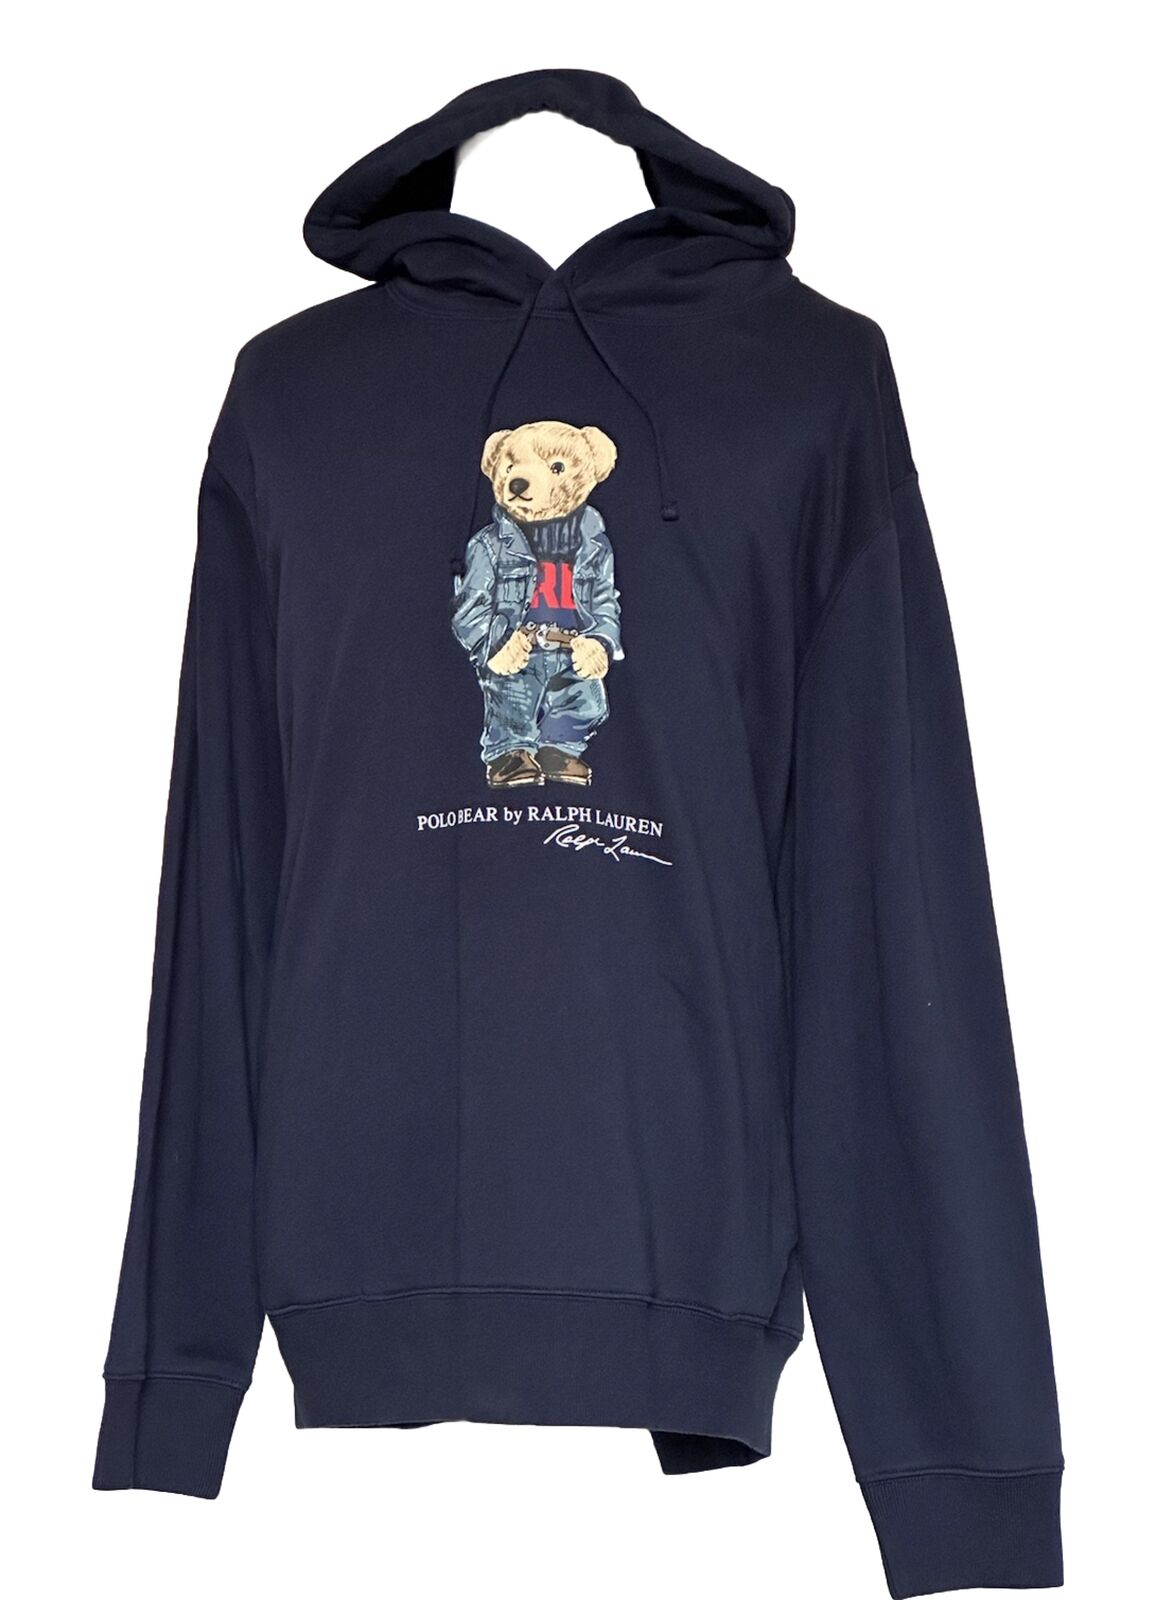 Neu mit Etikett: Polo Ralph Lauren Bären-Sweatshirt mit Kapuze, Blau, 2XL/2TTG 